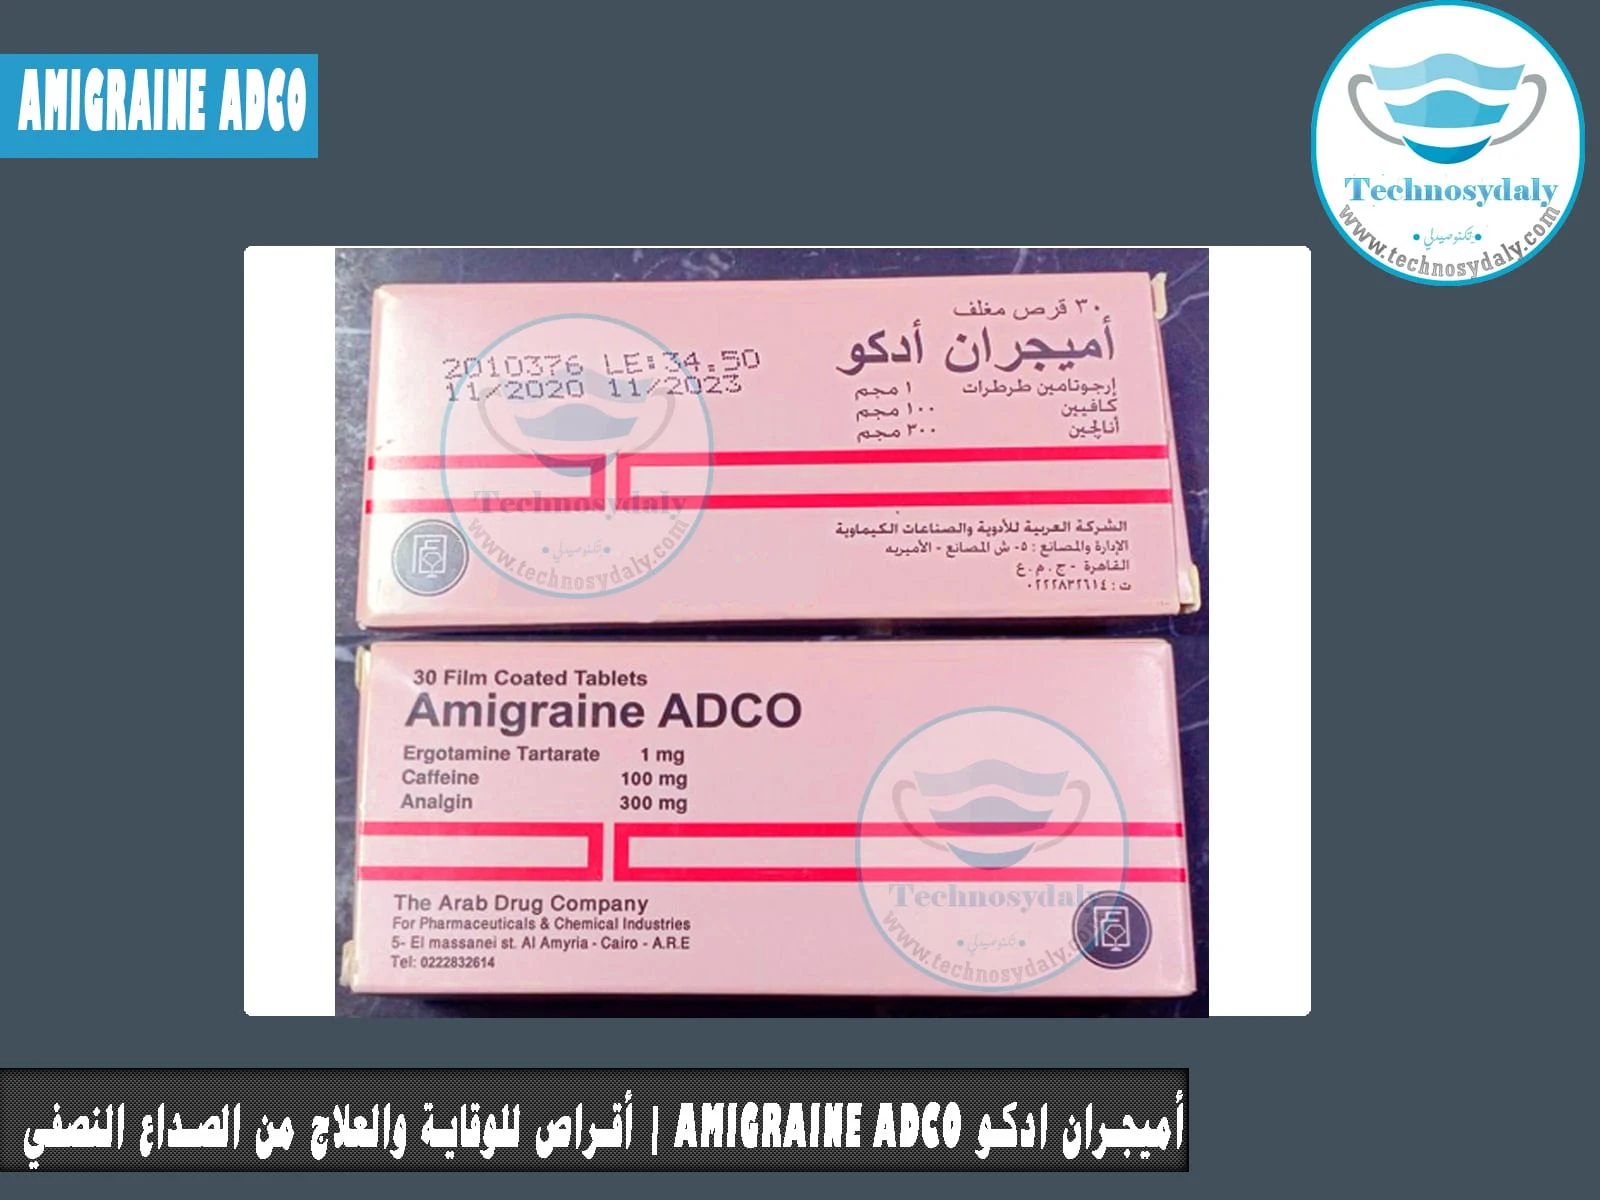 أميجران ادكو amigraine ADCO  أقراص للوقاية والعلاج من الصداع النصفي